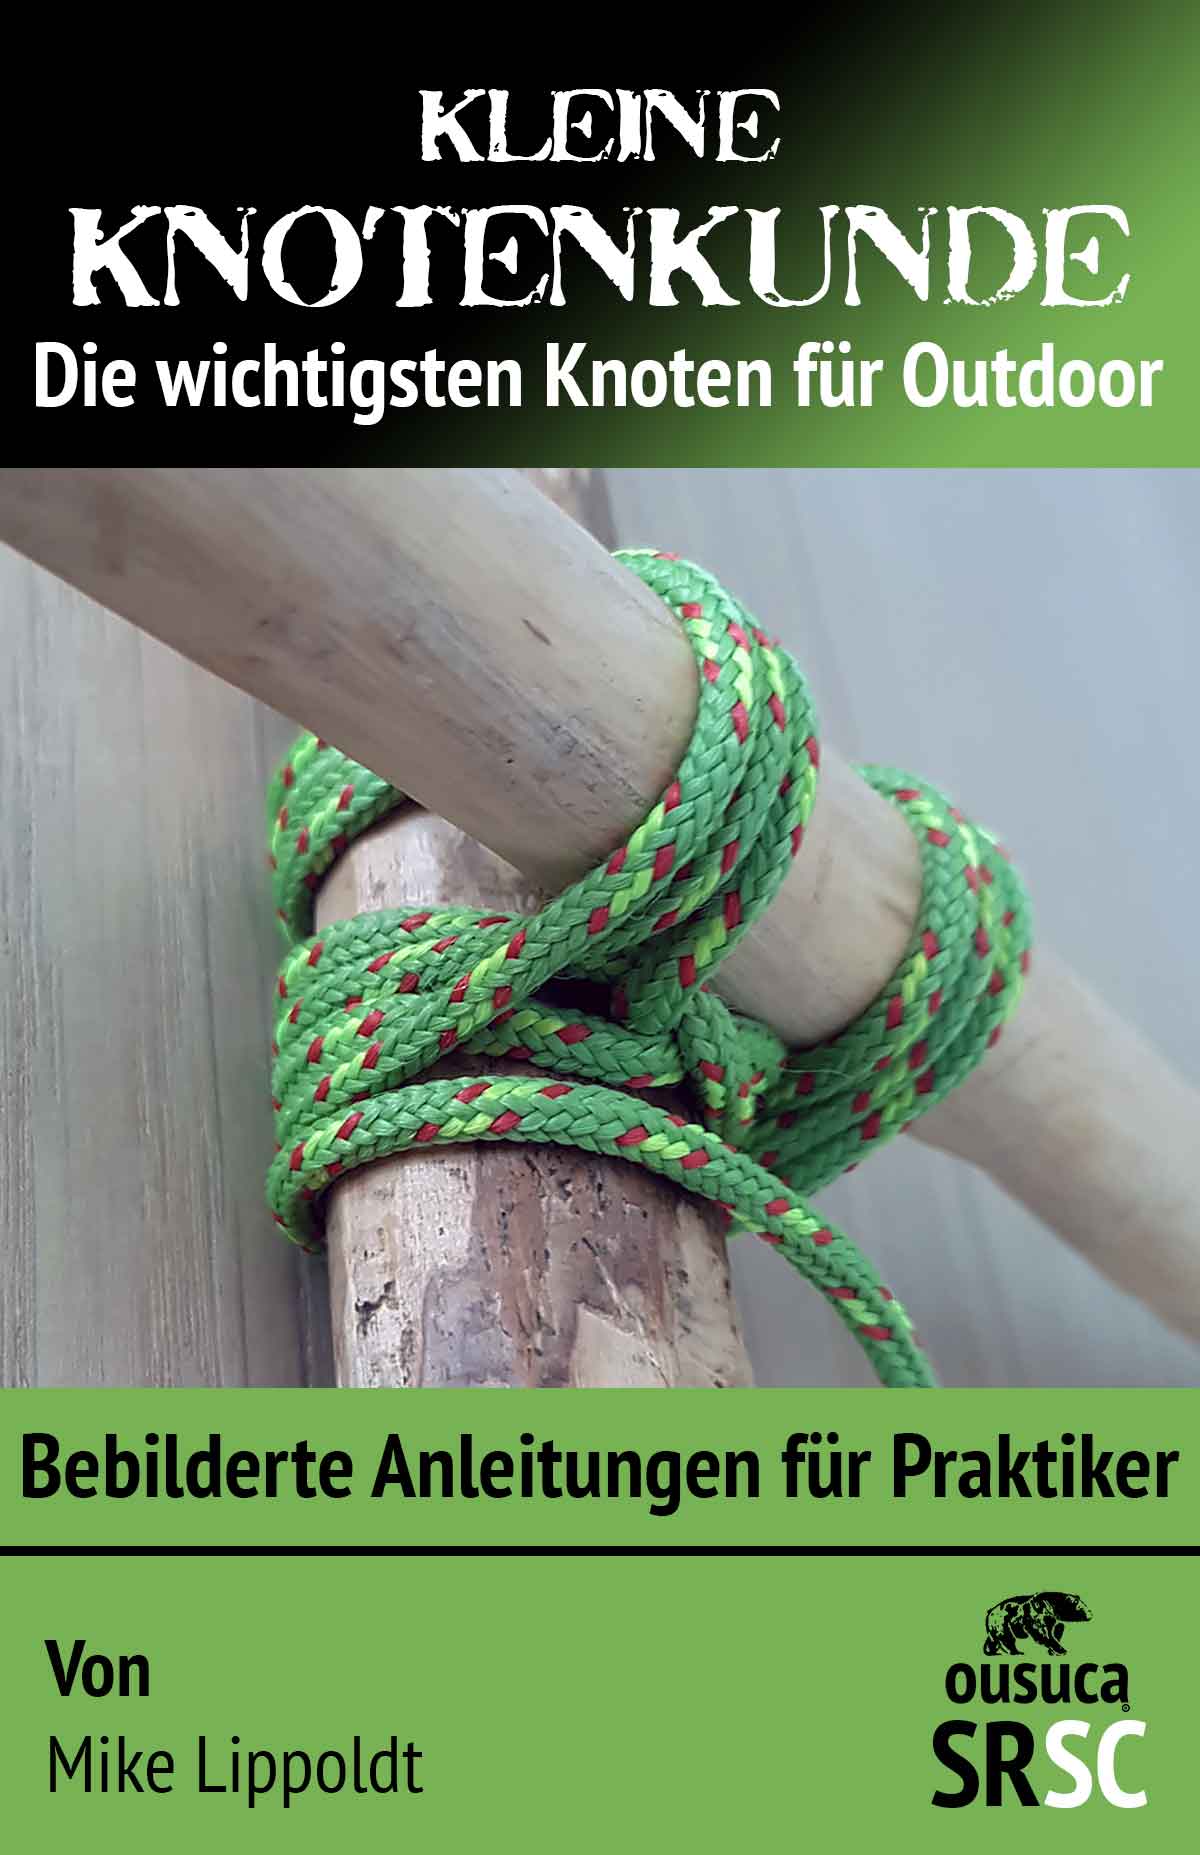 Knotenbuch / Kleine Knotenkunde mit den wichtigsten Knoten für Outdoor